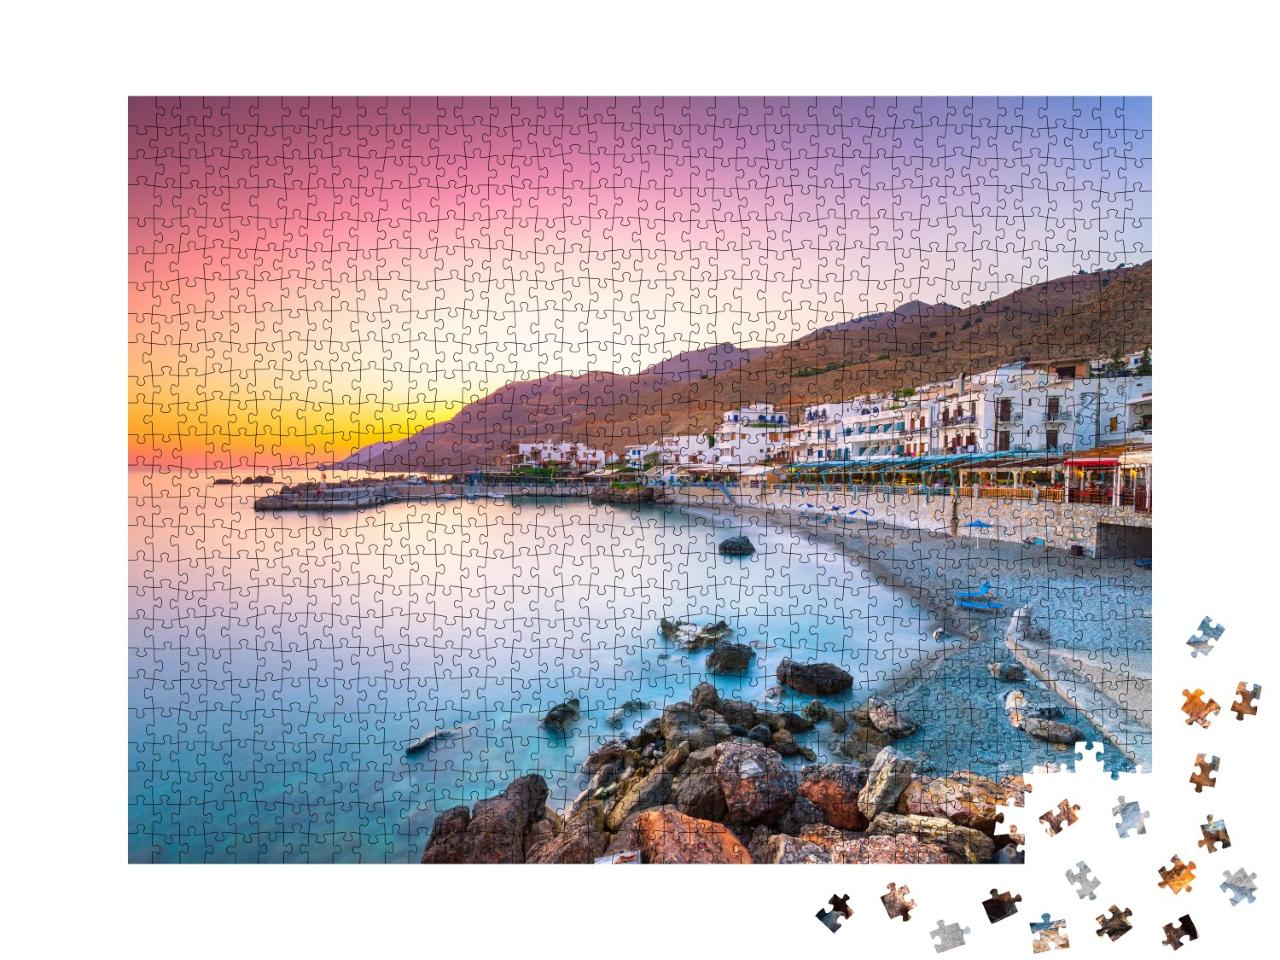 Puzzle de 1000 pièces « Le petit village de Chora Sfakion, Crète, Grèce »